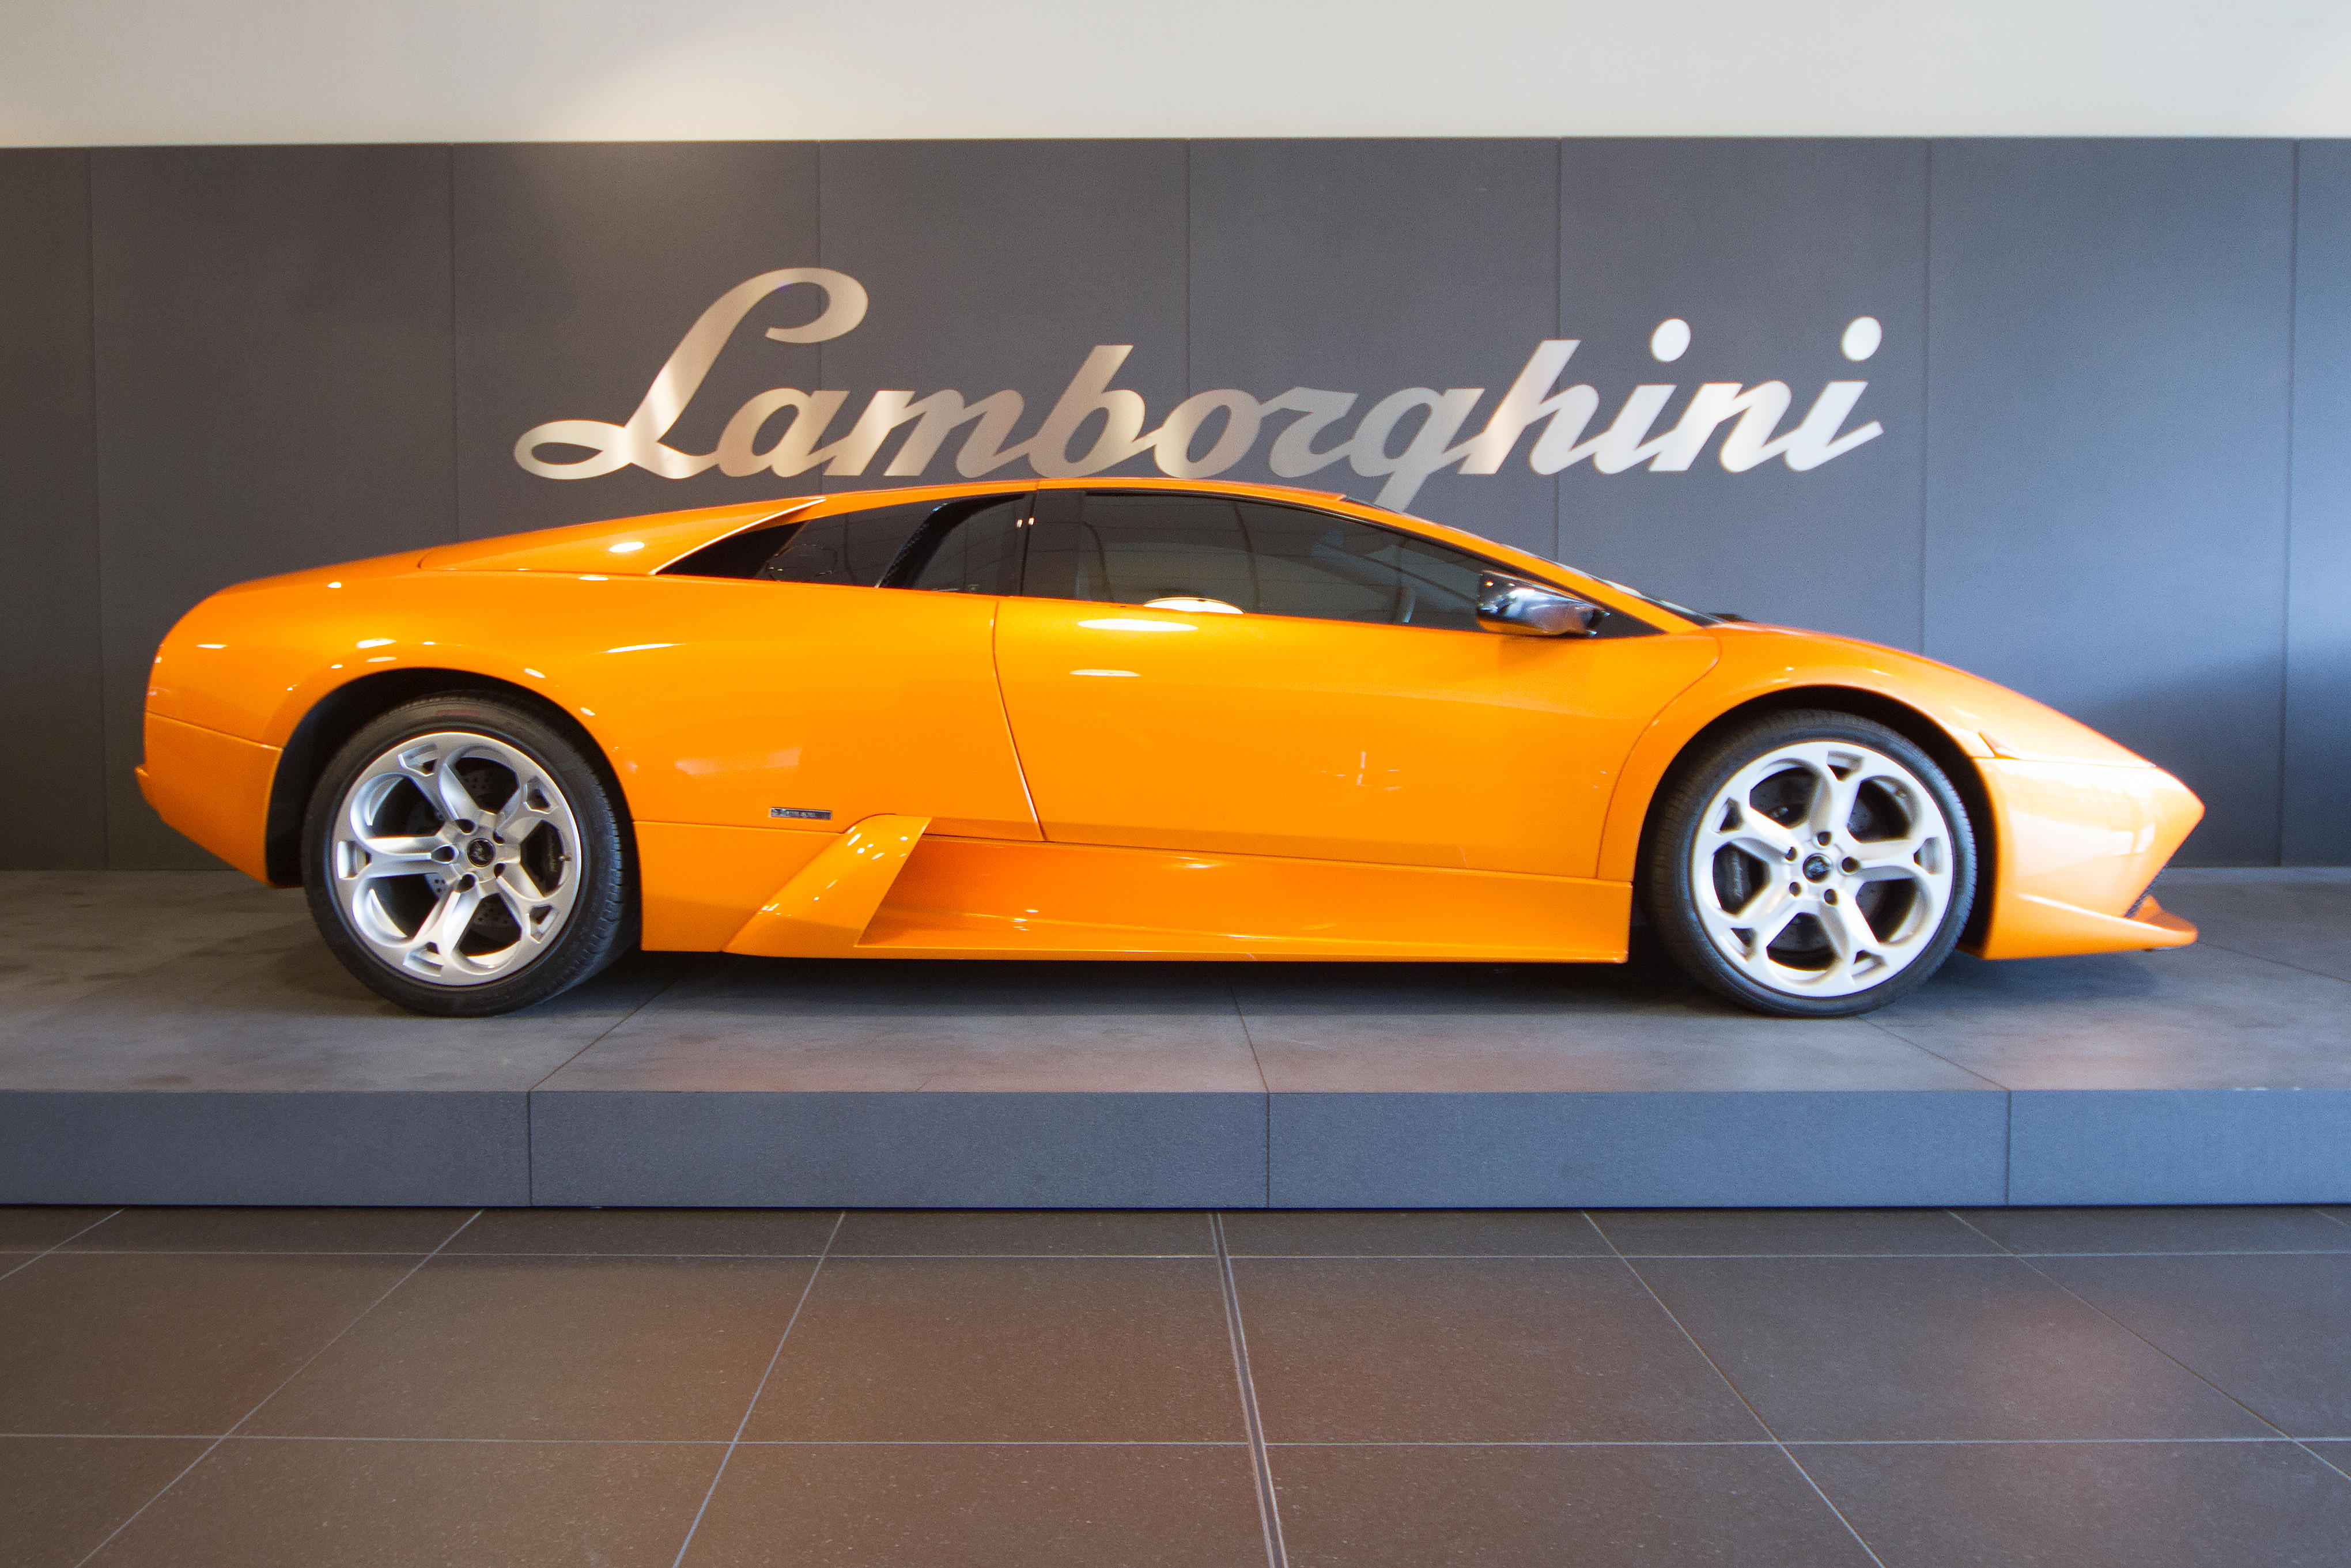 Images Lamborghini Birmingham